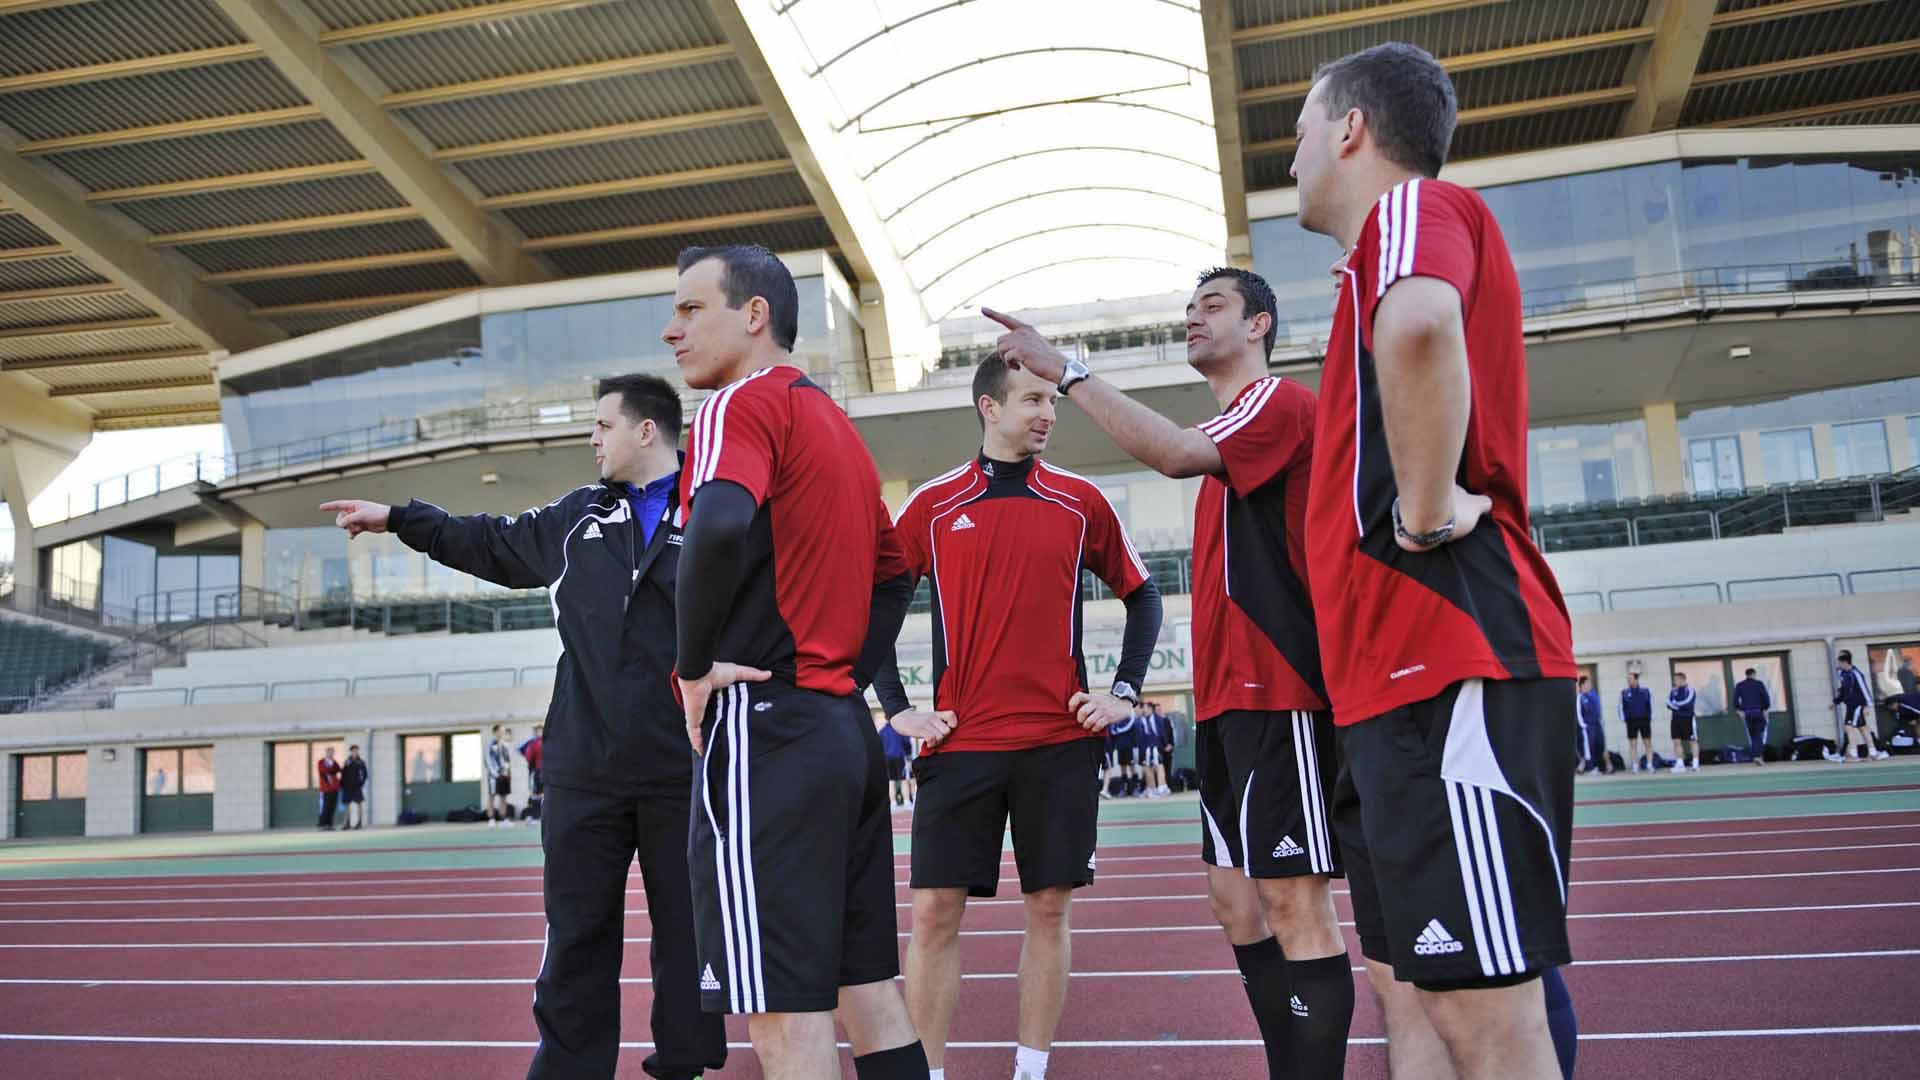 Magas szintű futball asszisztens képzés magyar résztvevővel